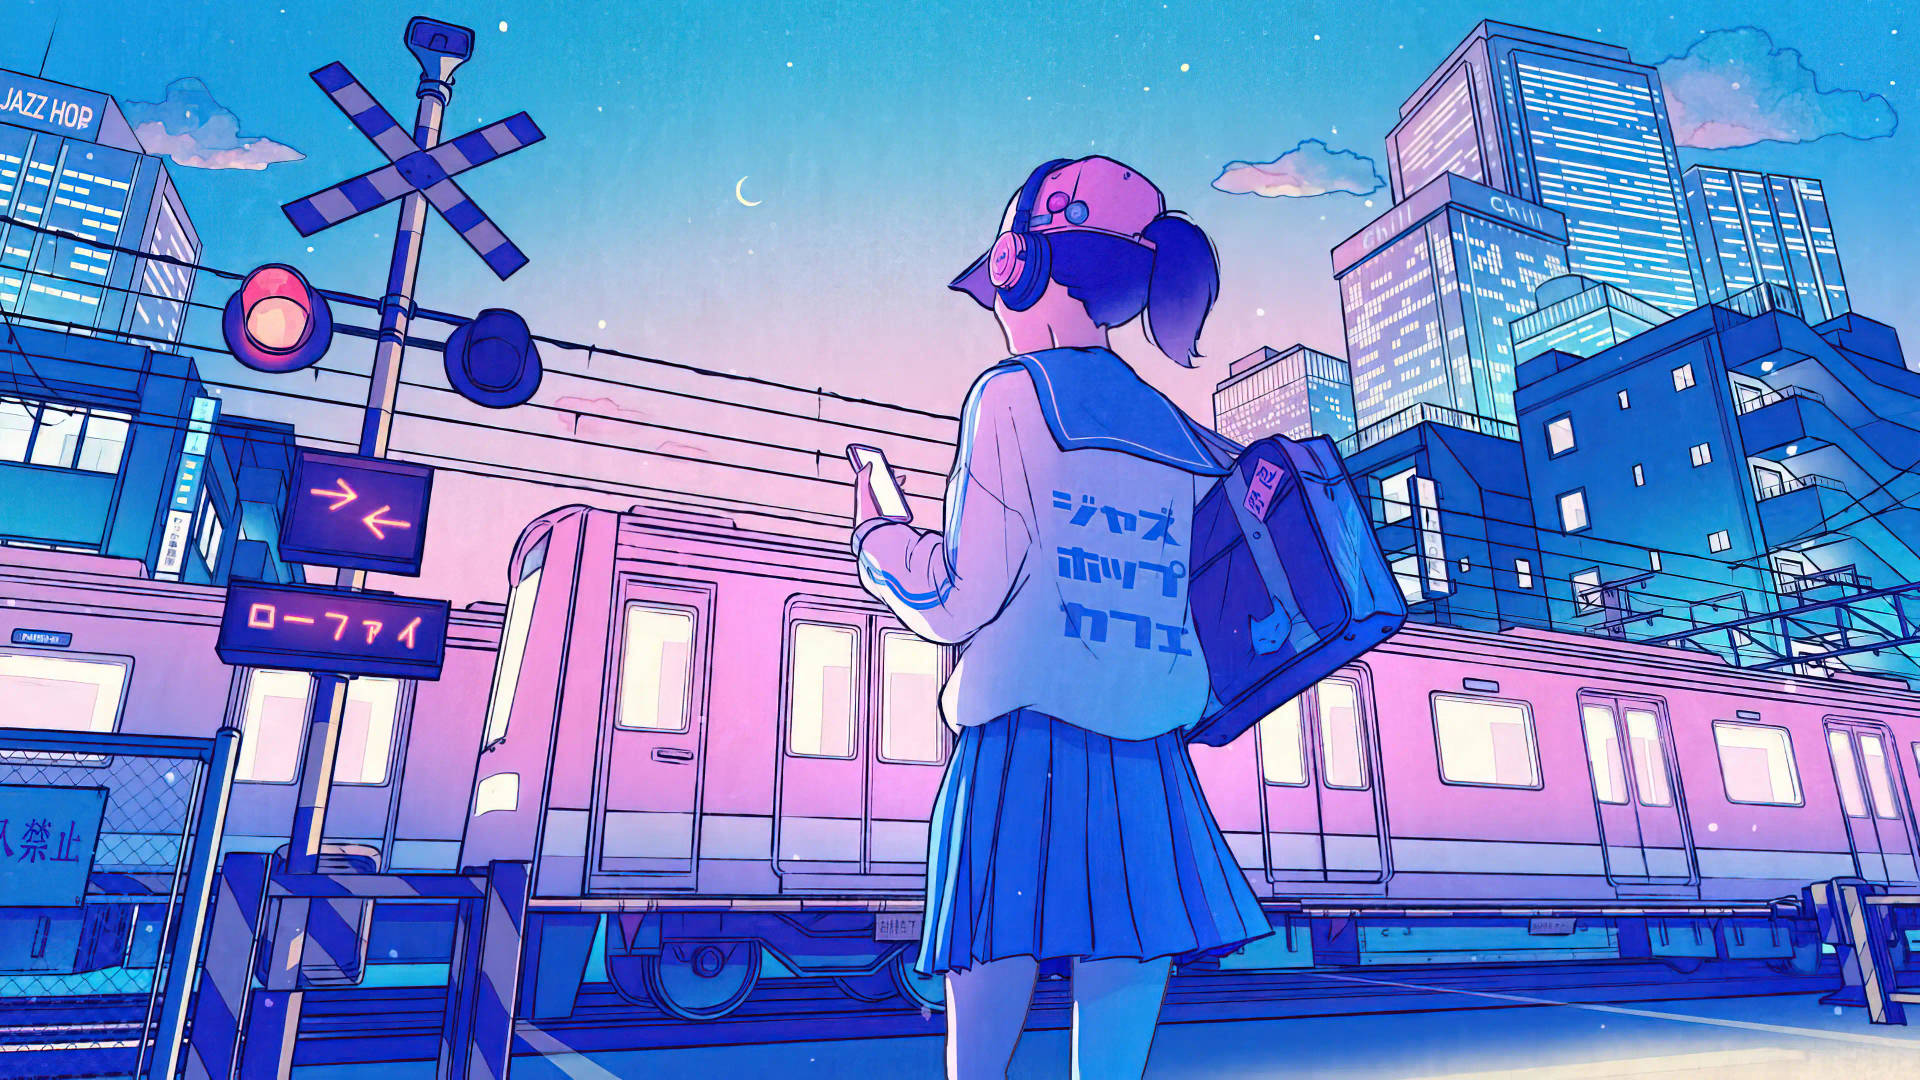 Neon Aesthetic Anime City